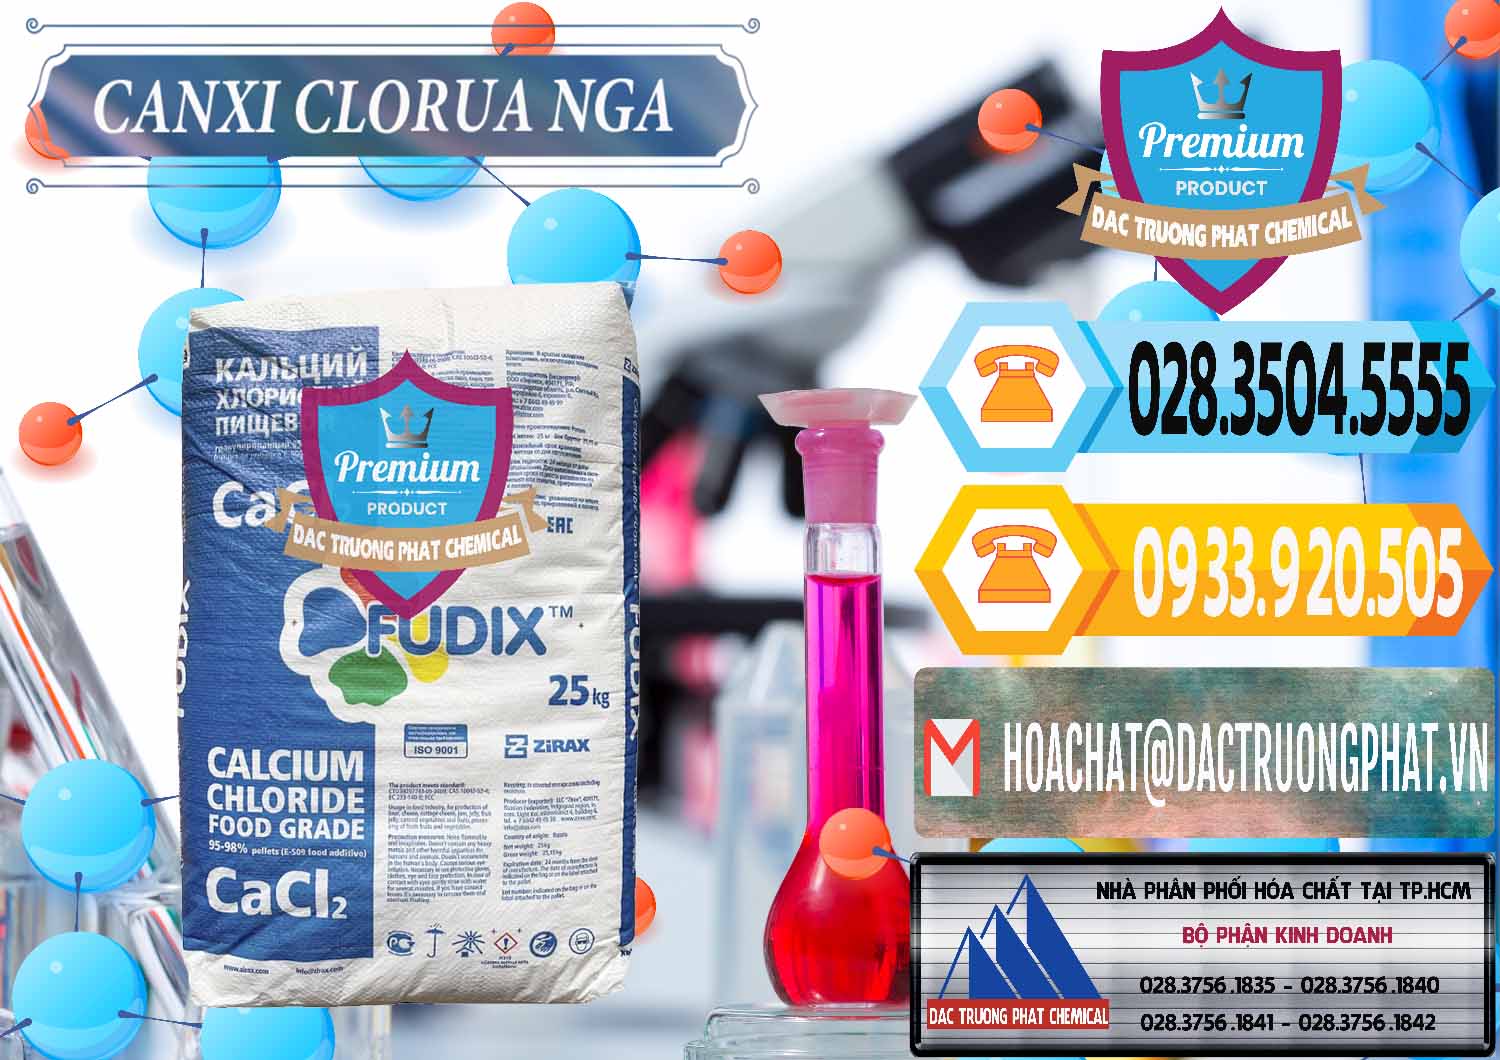 Cty chuyên phân phối _ bán CaCl2 – Canxi Clorua Nga Russia - 0430 - Nơi phân phối ( bán ) hóa chất tại TP.HCM - hoachattayrua.net